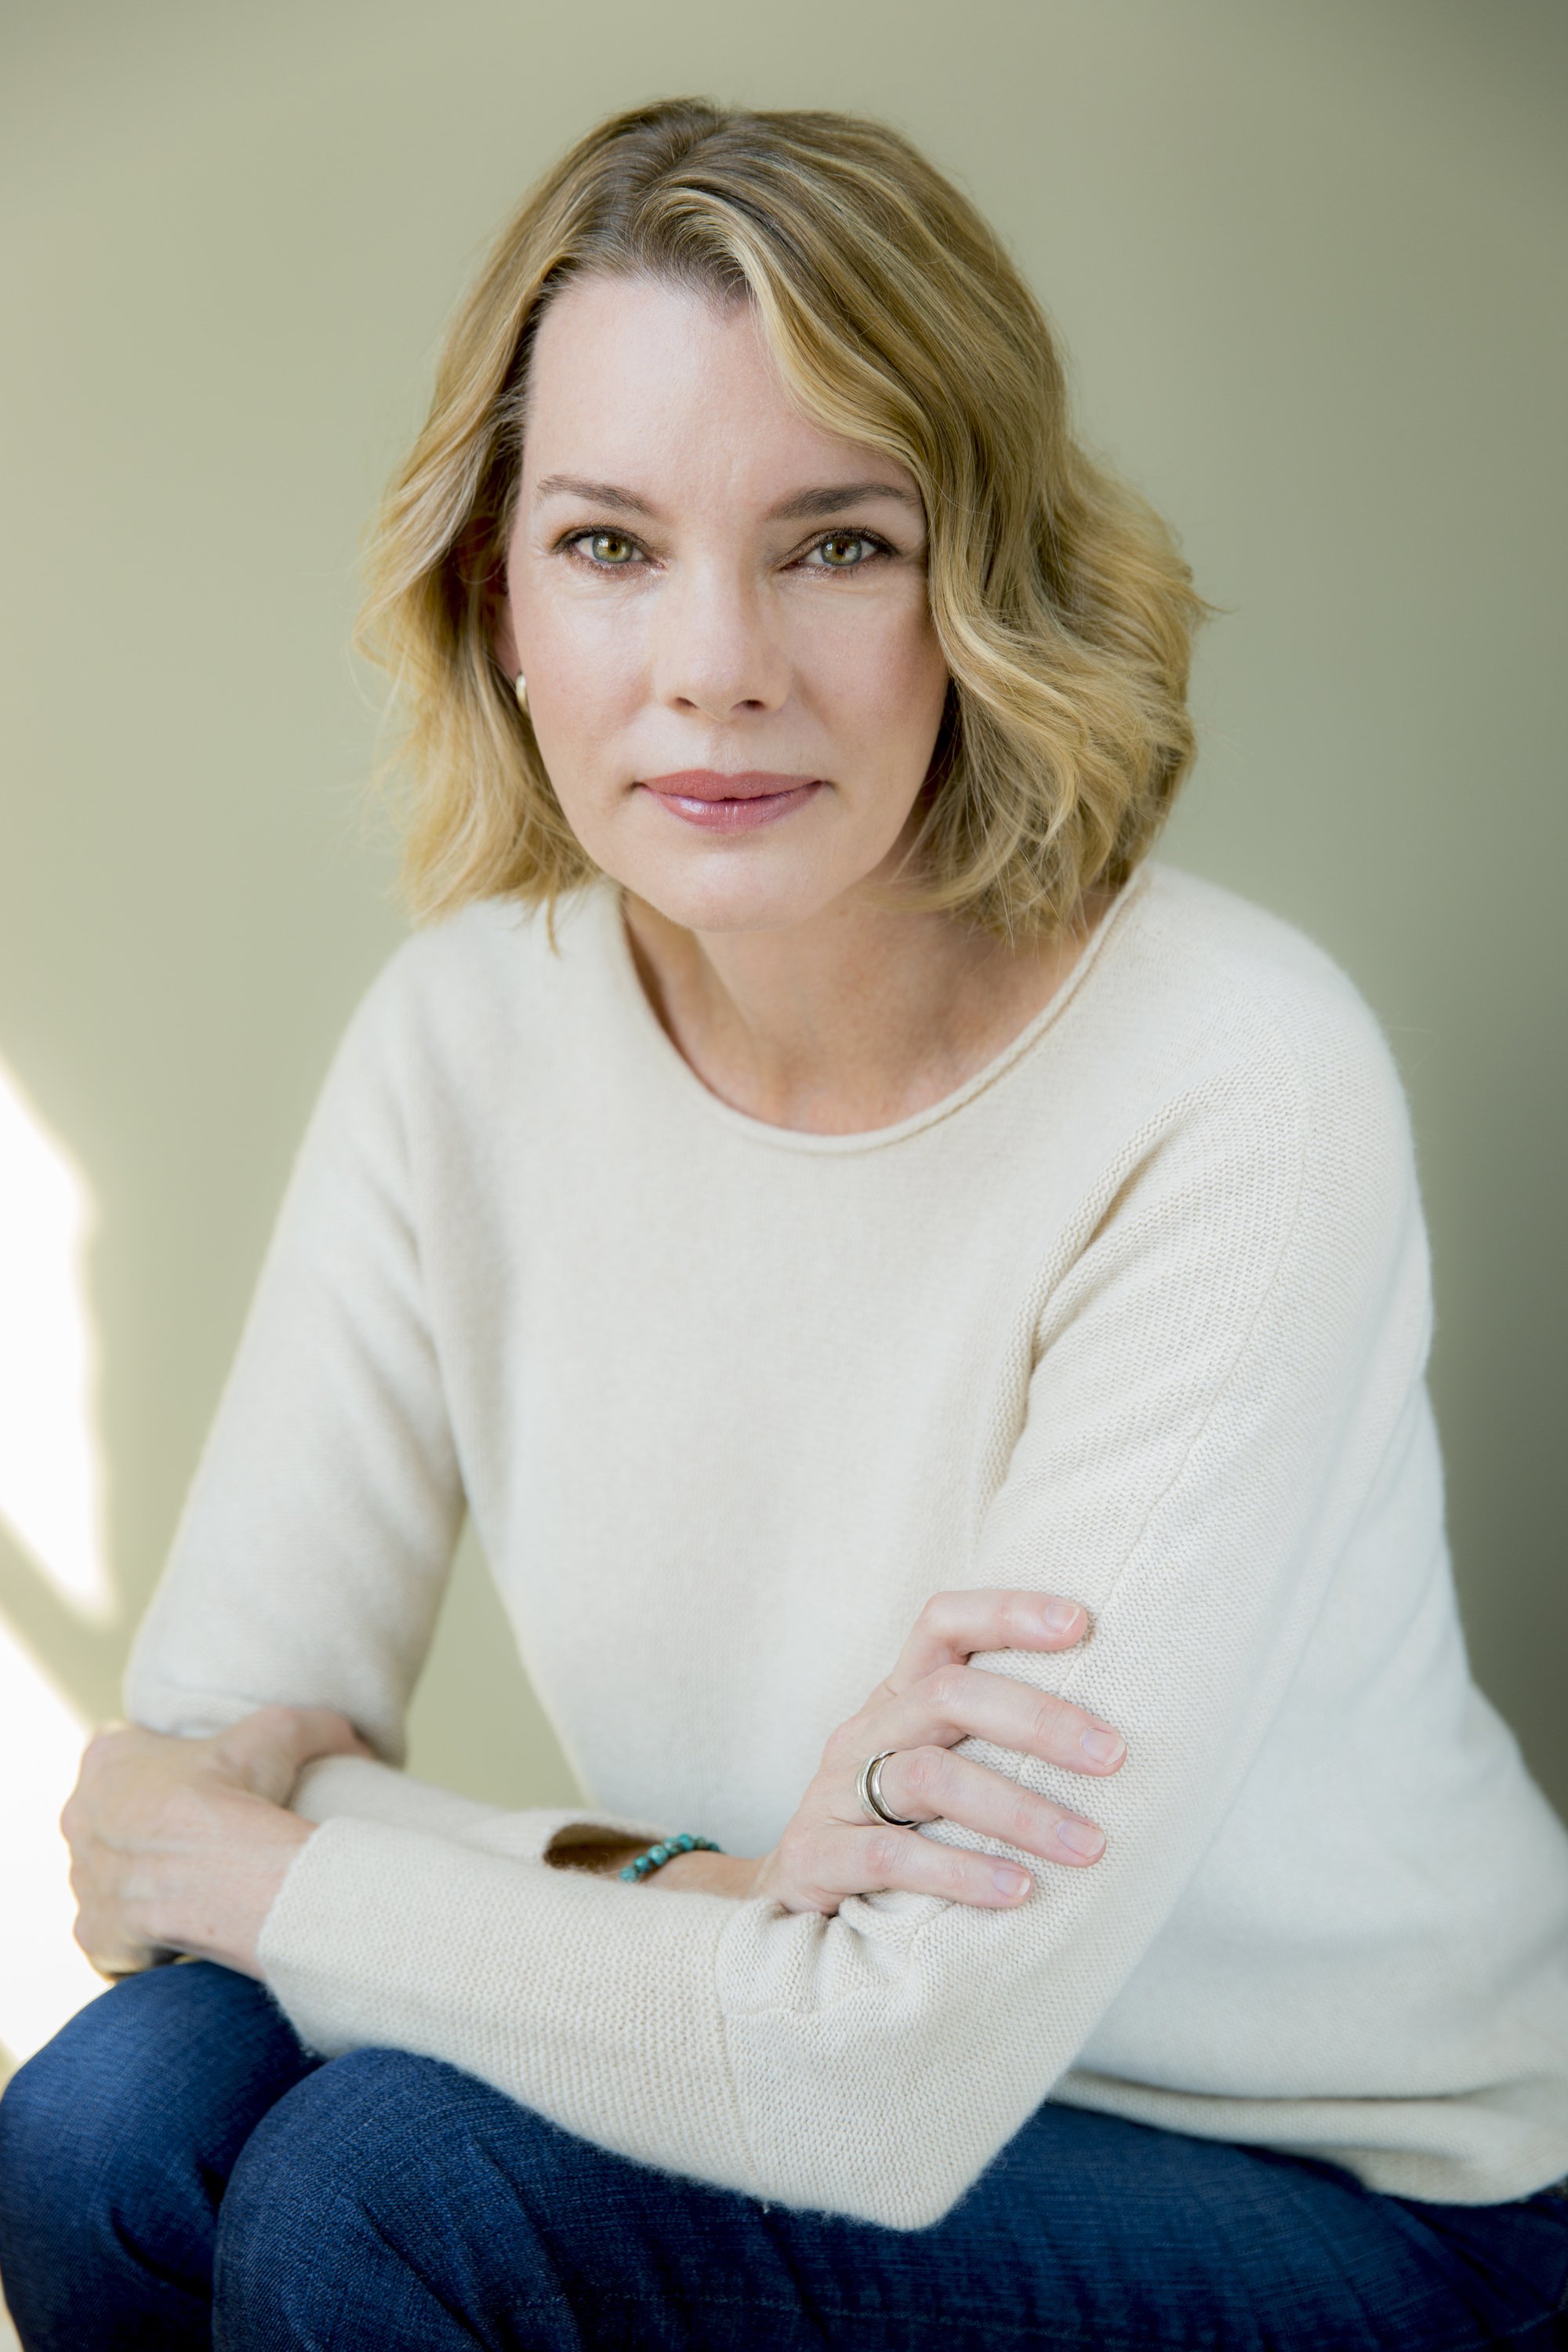 Author Fiona Davis